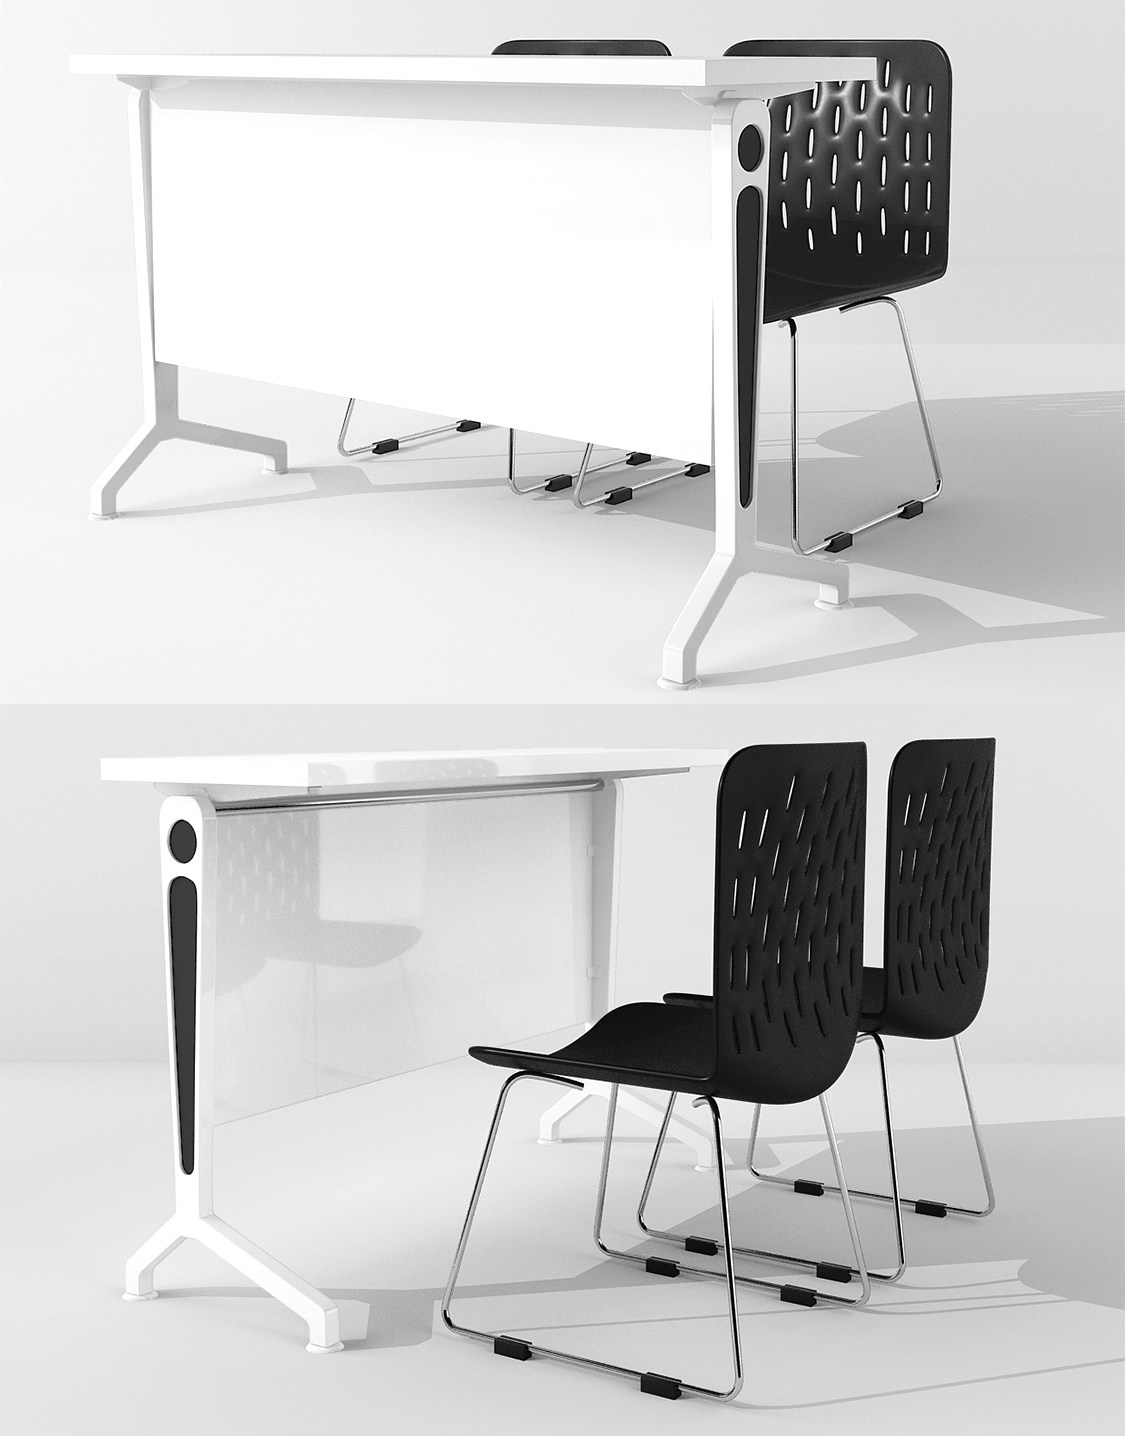 6现代培训桌折叠桌椅子 3d模型下载